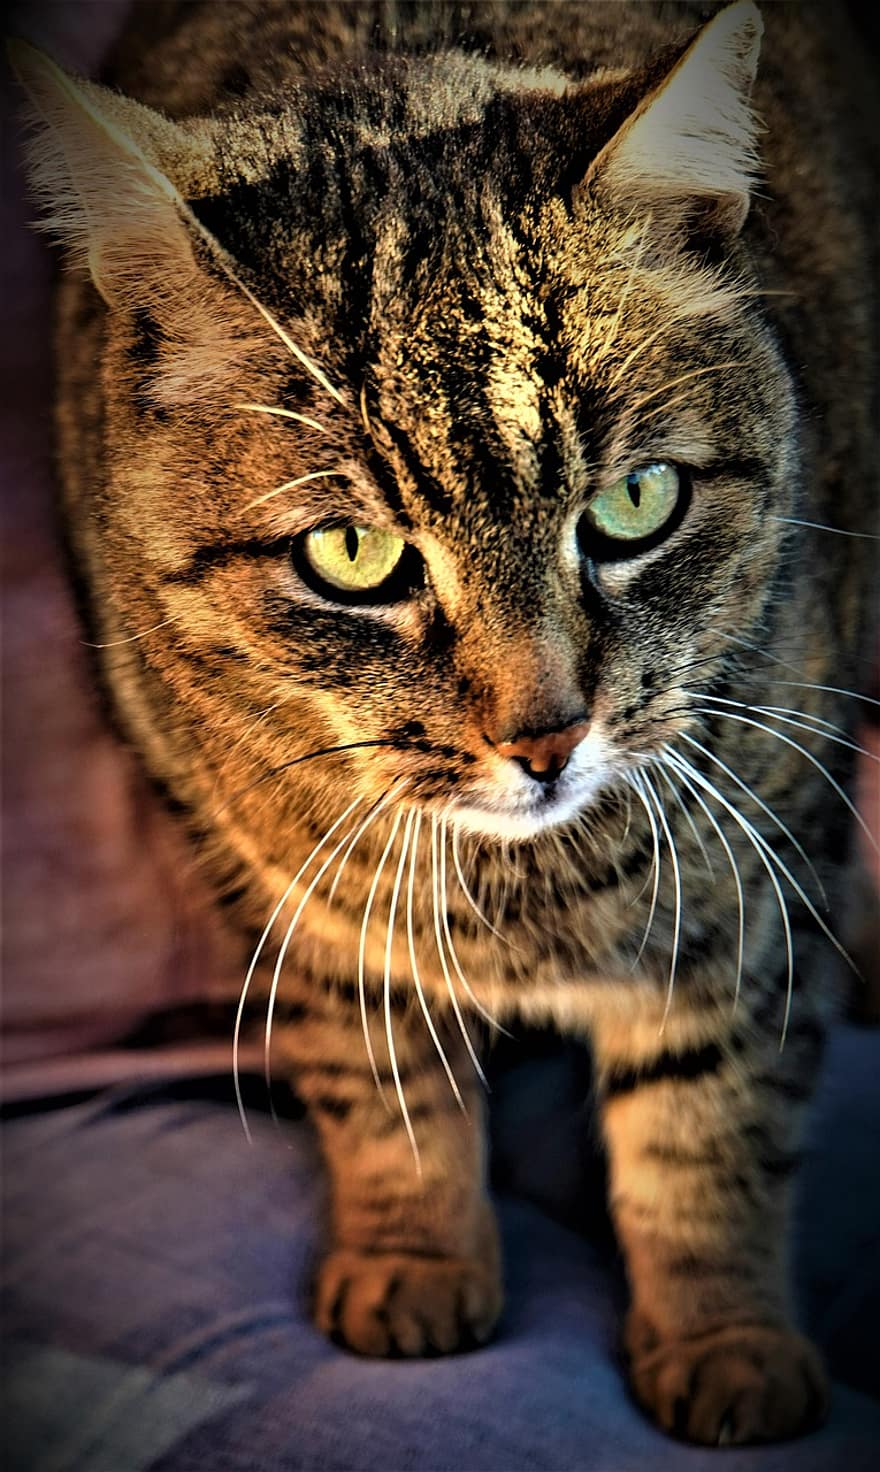 Γάτα, ζώο, πορτρέτο, σπίτι τίγρης, γατάκι, μάτια, τίγρη, τα μάτια της γάτας, πράσινα μάτια, ομορφιά, περίεργος